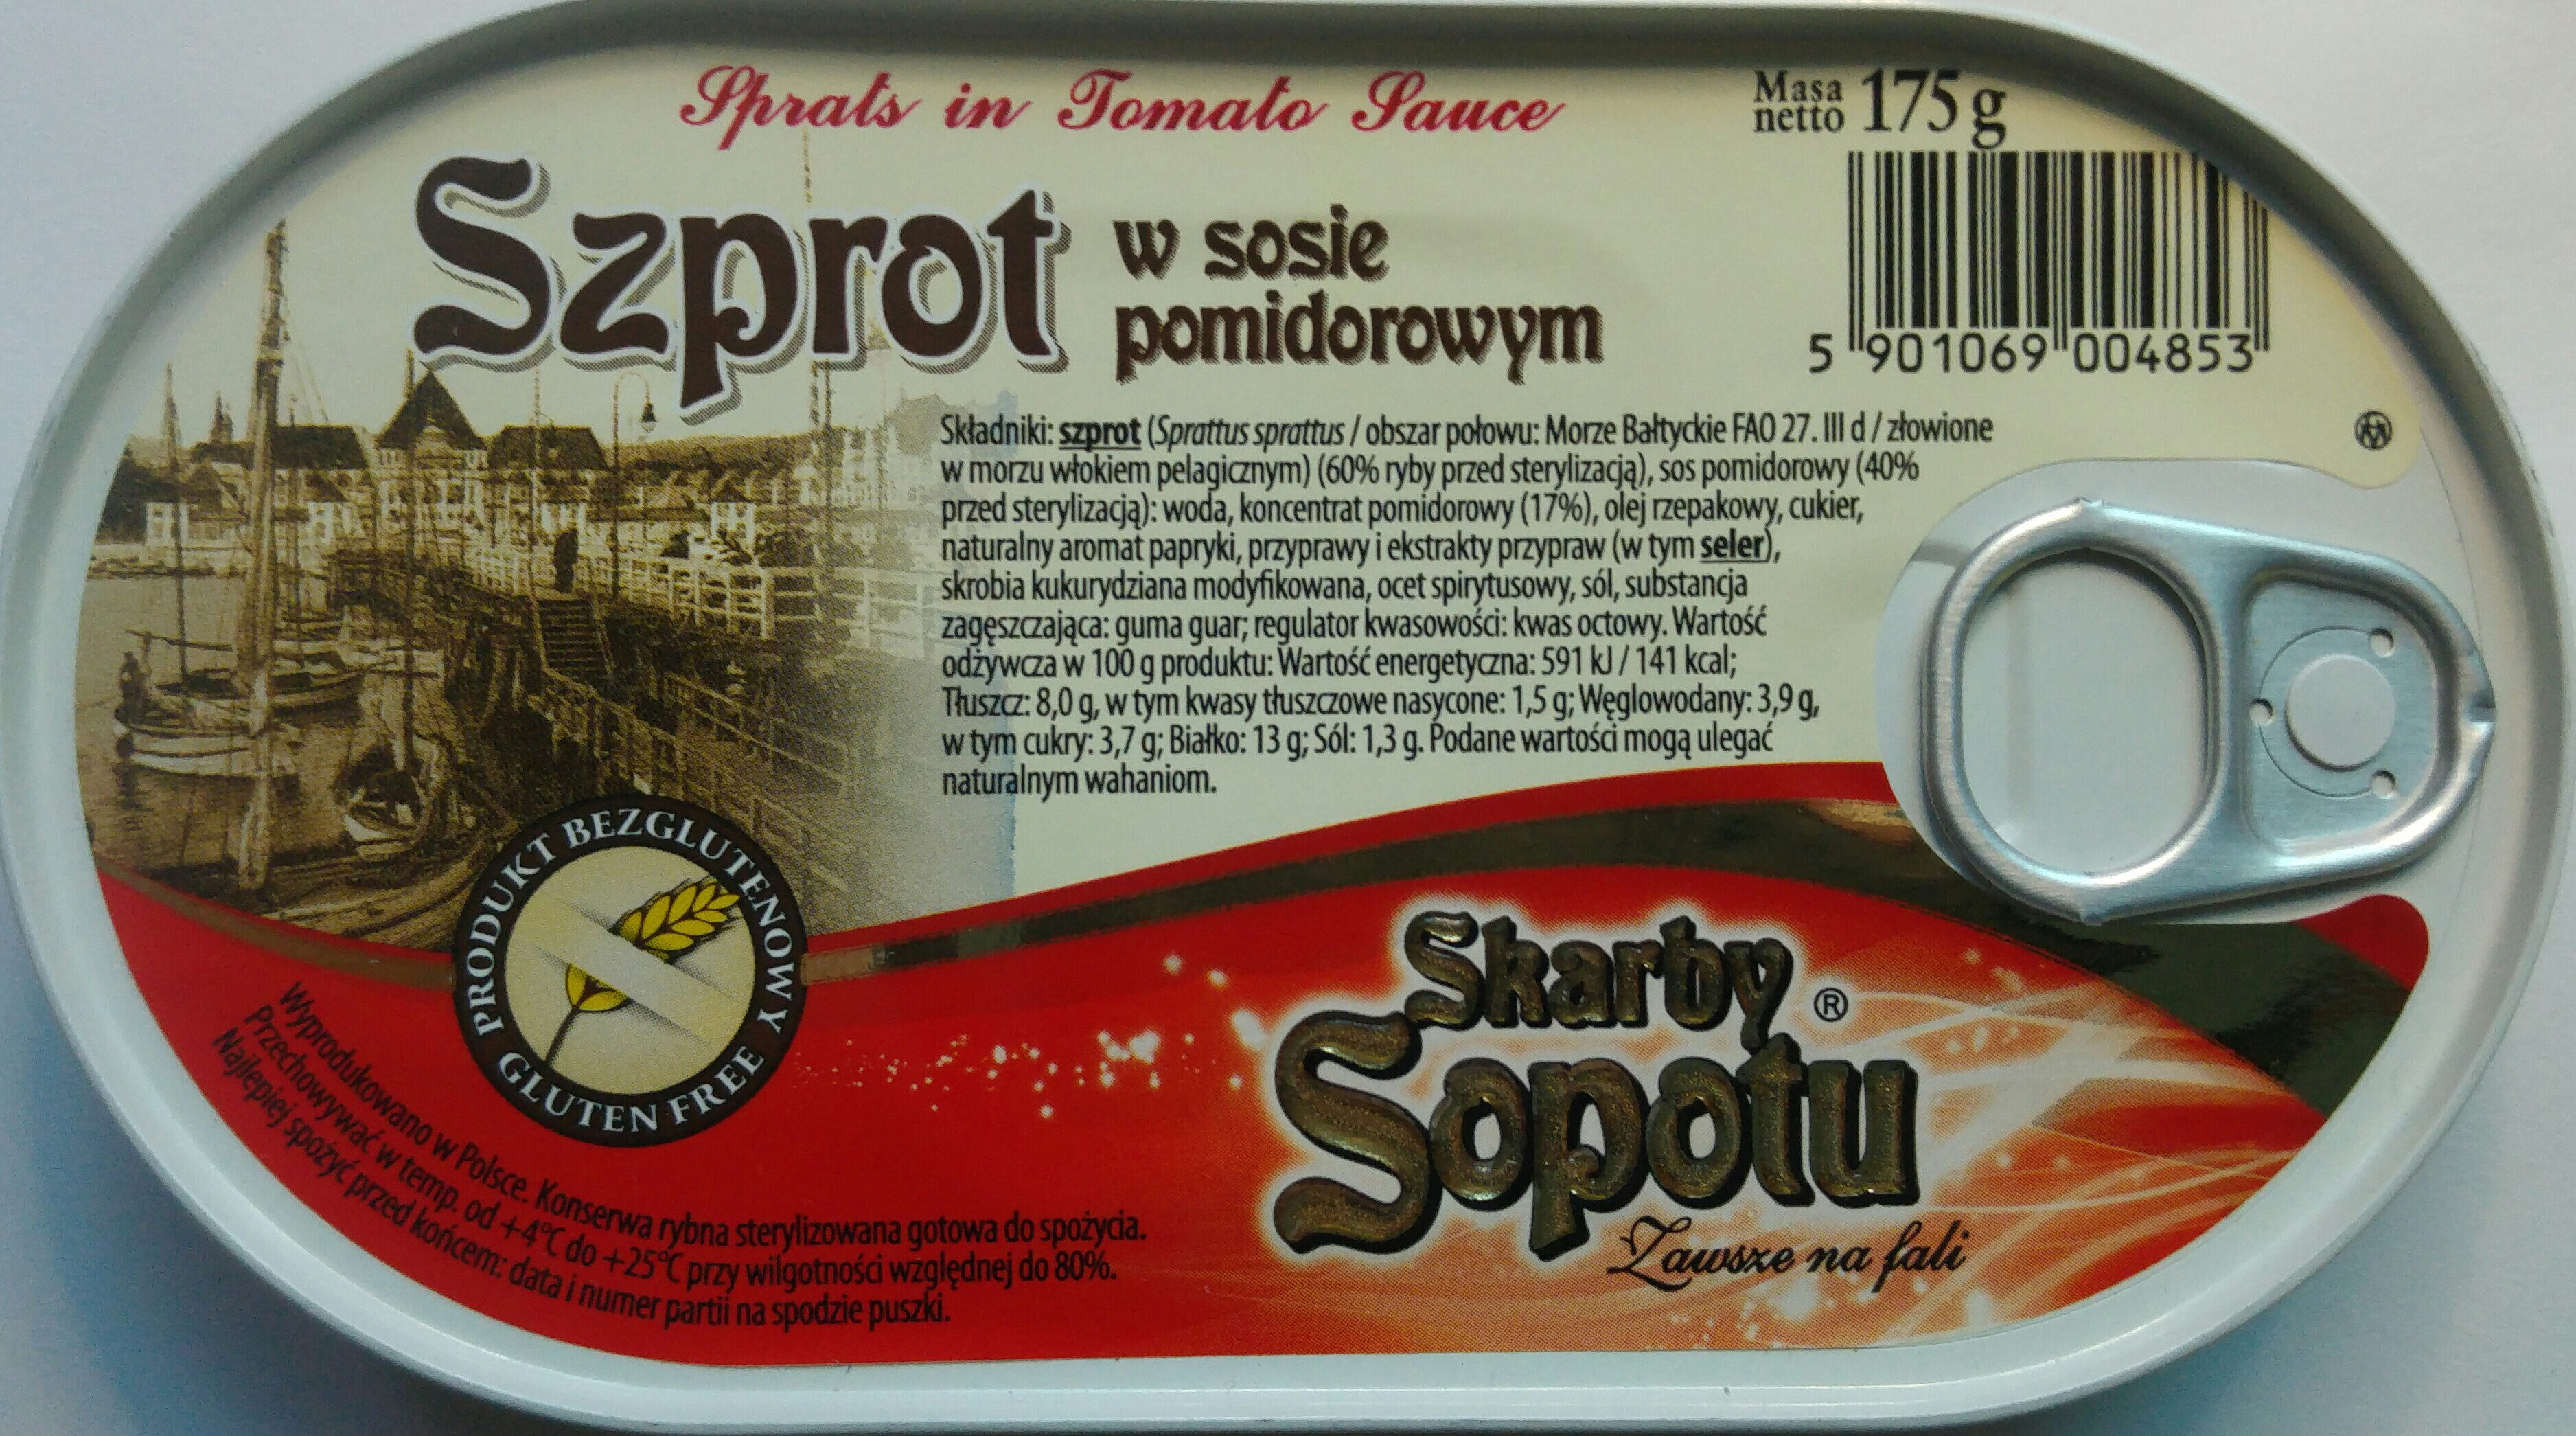 Szprot w sosie pomidorowym. - Product - pl